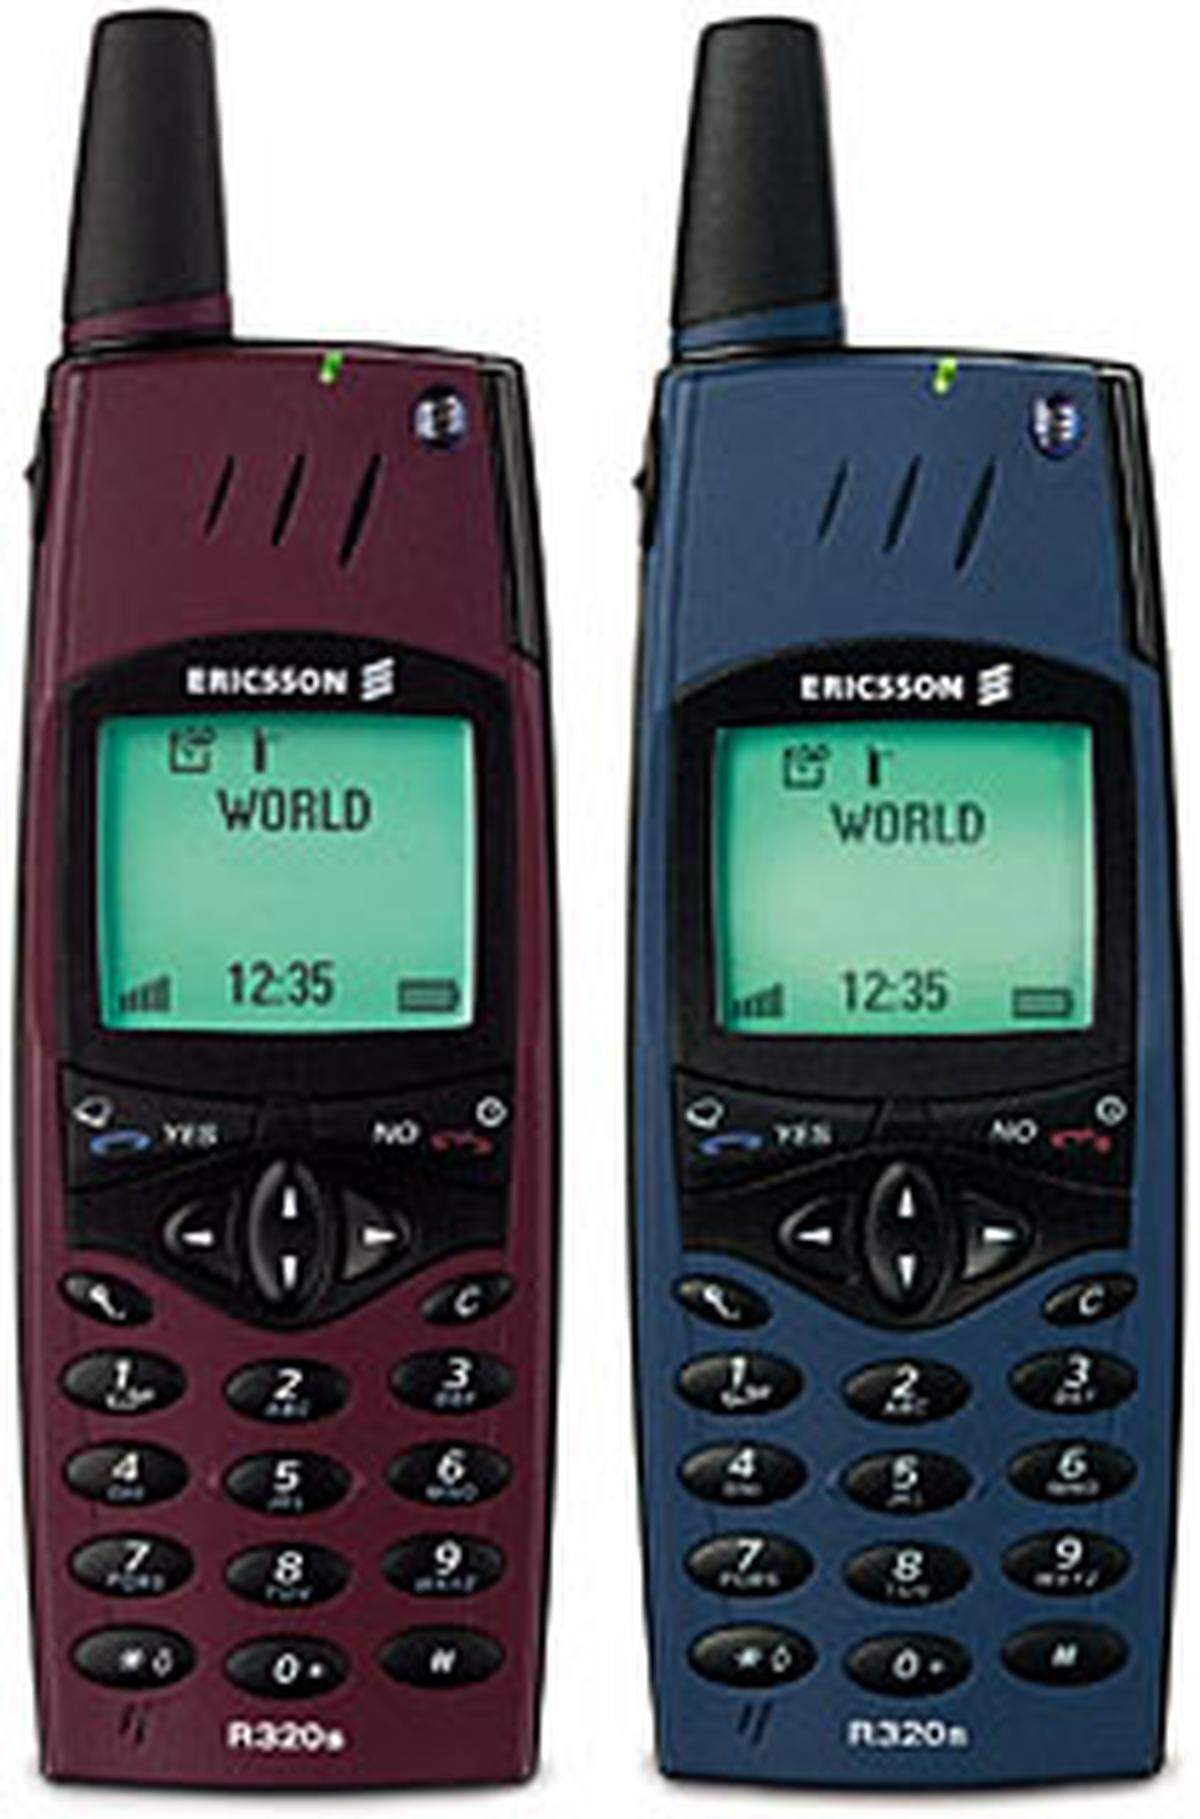 Kaum zu glauben: 1999 wurden auch die ersten internet-fähigen Handys mit WAP-Browser präsentiert. Die zwei Ericsson-Geräte (damals noch ohne Sony) sehen zwar ziemlich sperrig aus, sind aber mit rund 100 Gramm leichter als die meisten modernen Smartphones.